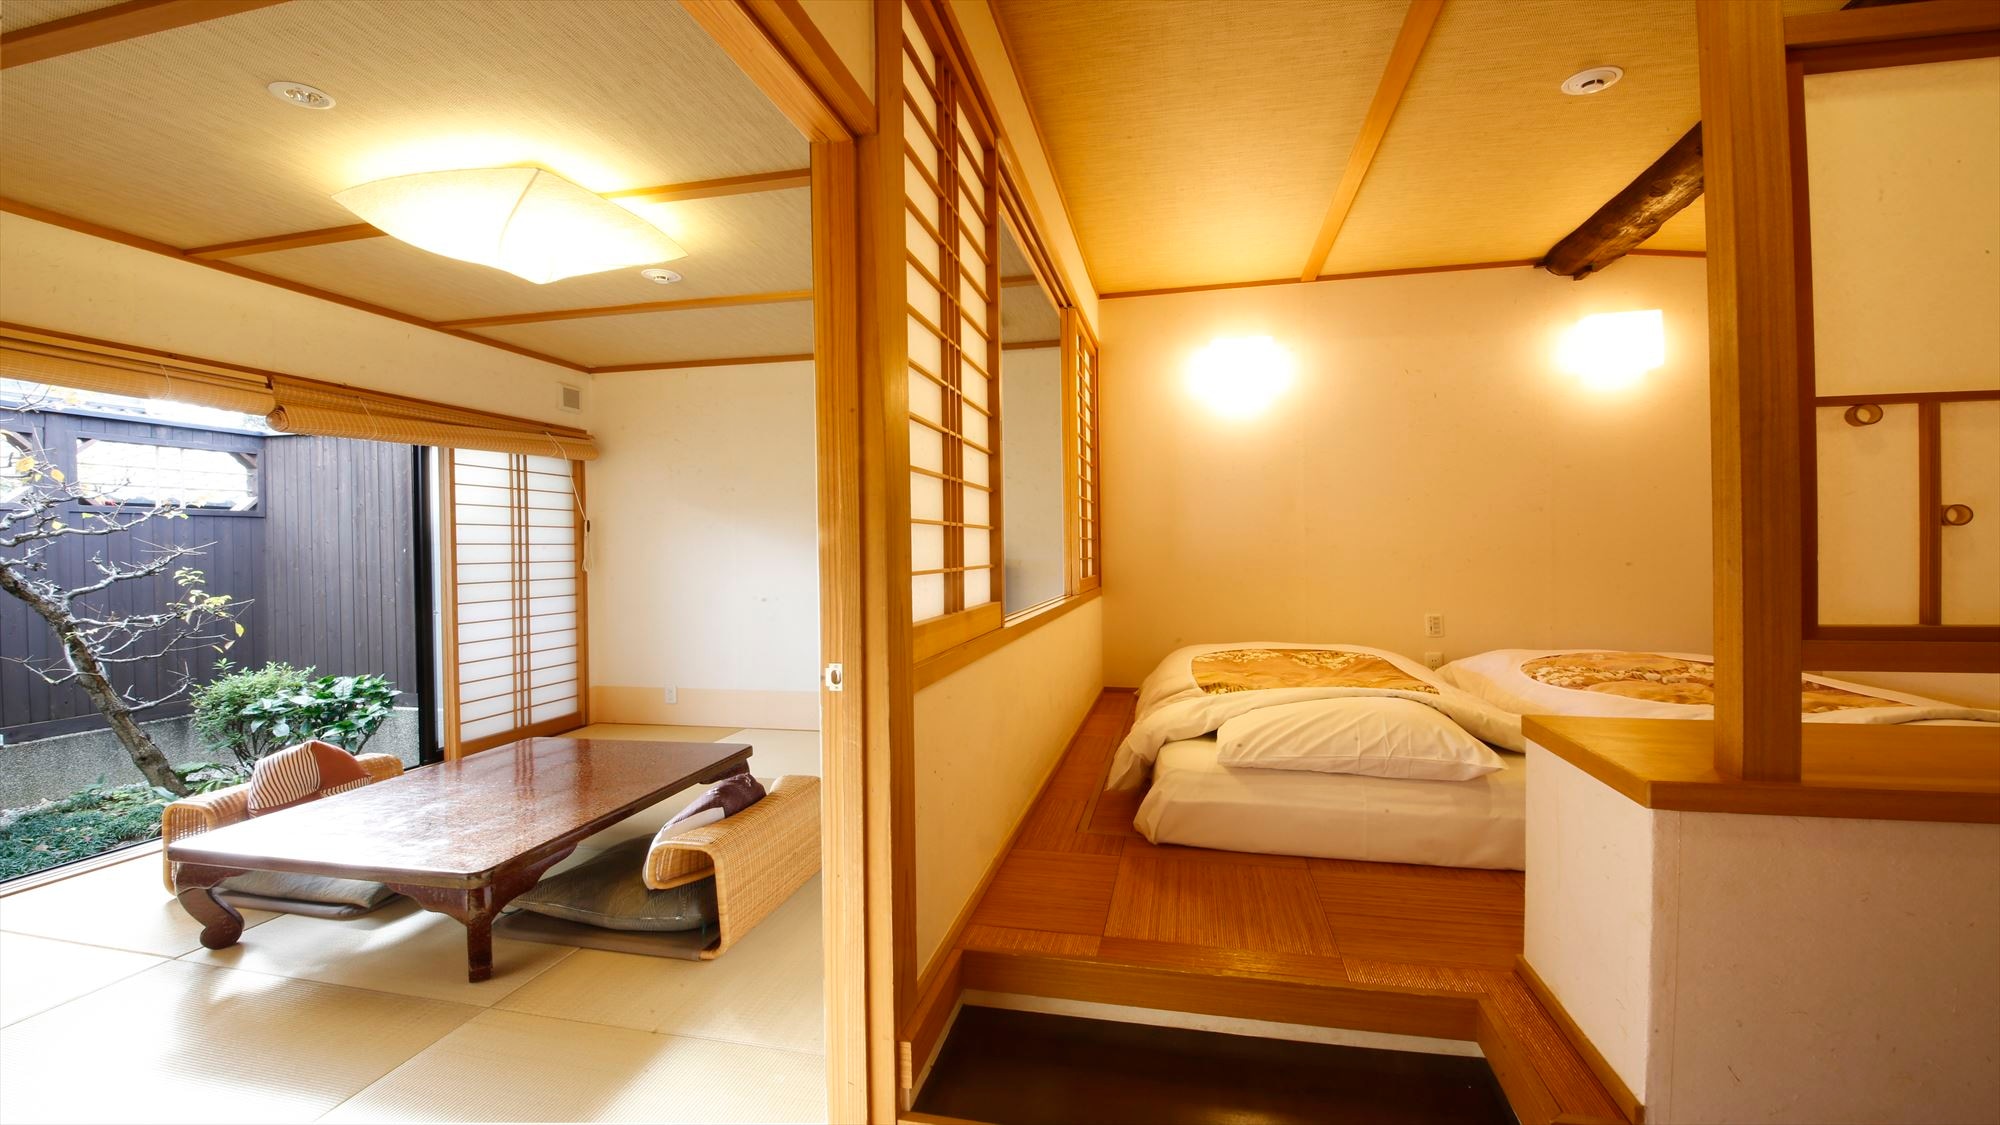 Kanaru Sanso是一間帶露天梅花浴的房間。這是一個12榻榻米的房間，分為兩個房間。